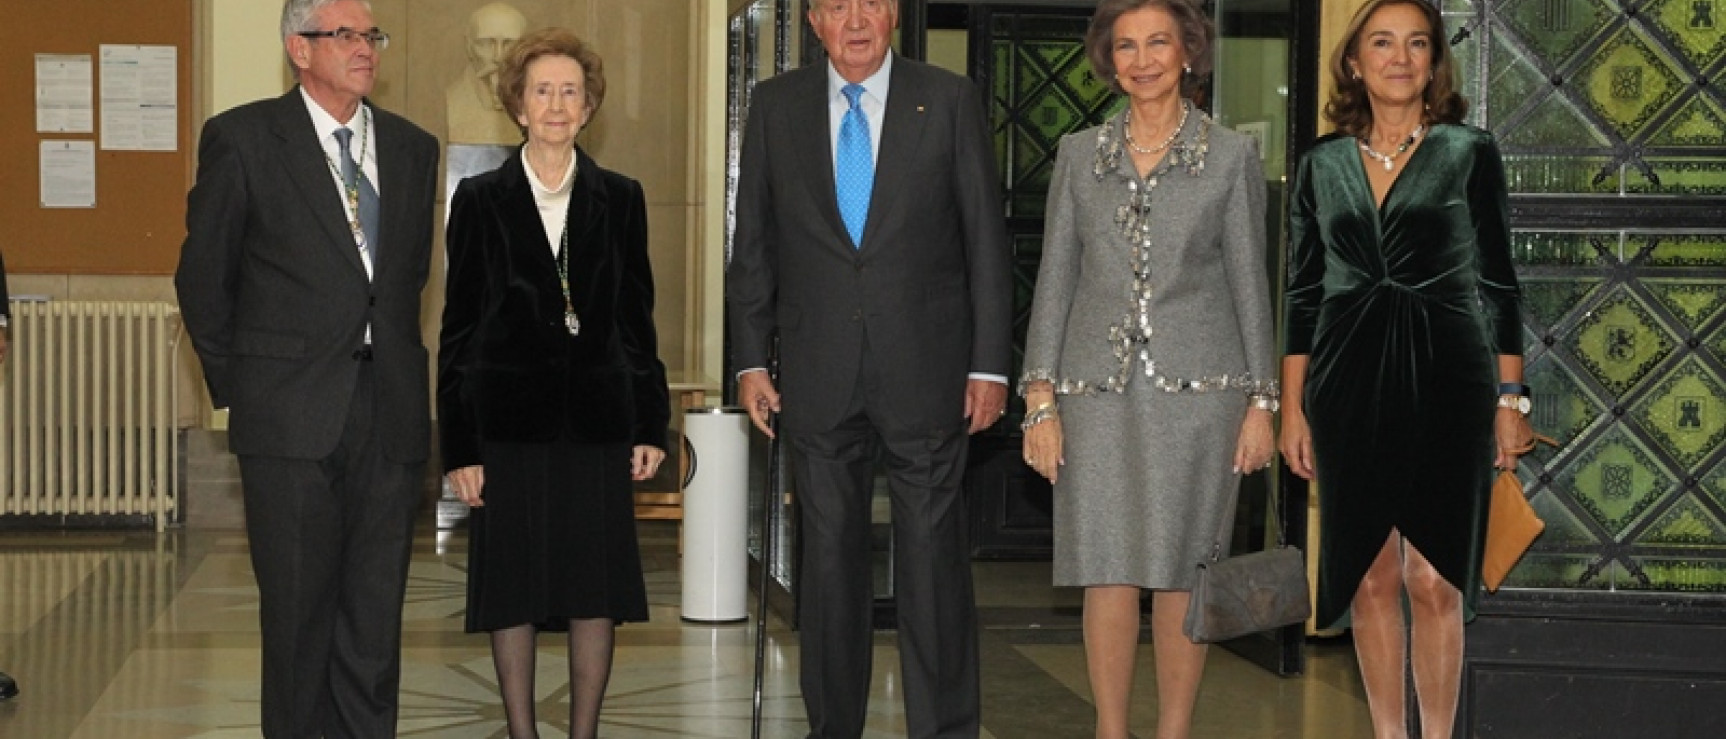 Los reyes don Juan Carlos y doña Sofía junto a Margarita Salas. © Casa de S. M. el Rey.